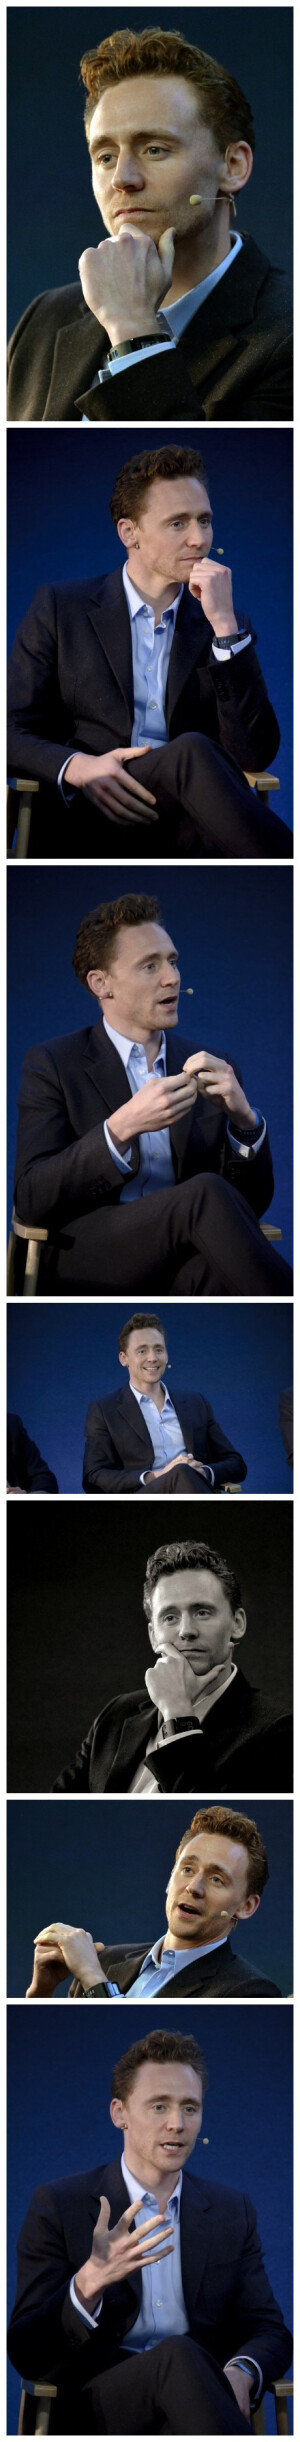 舔手不想回人间。。#HQ##Tom Hiddleston# attends the Meet The Filmmakers event for Thor: The Dark World at the Apple Store on October 18, 2013